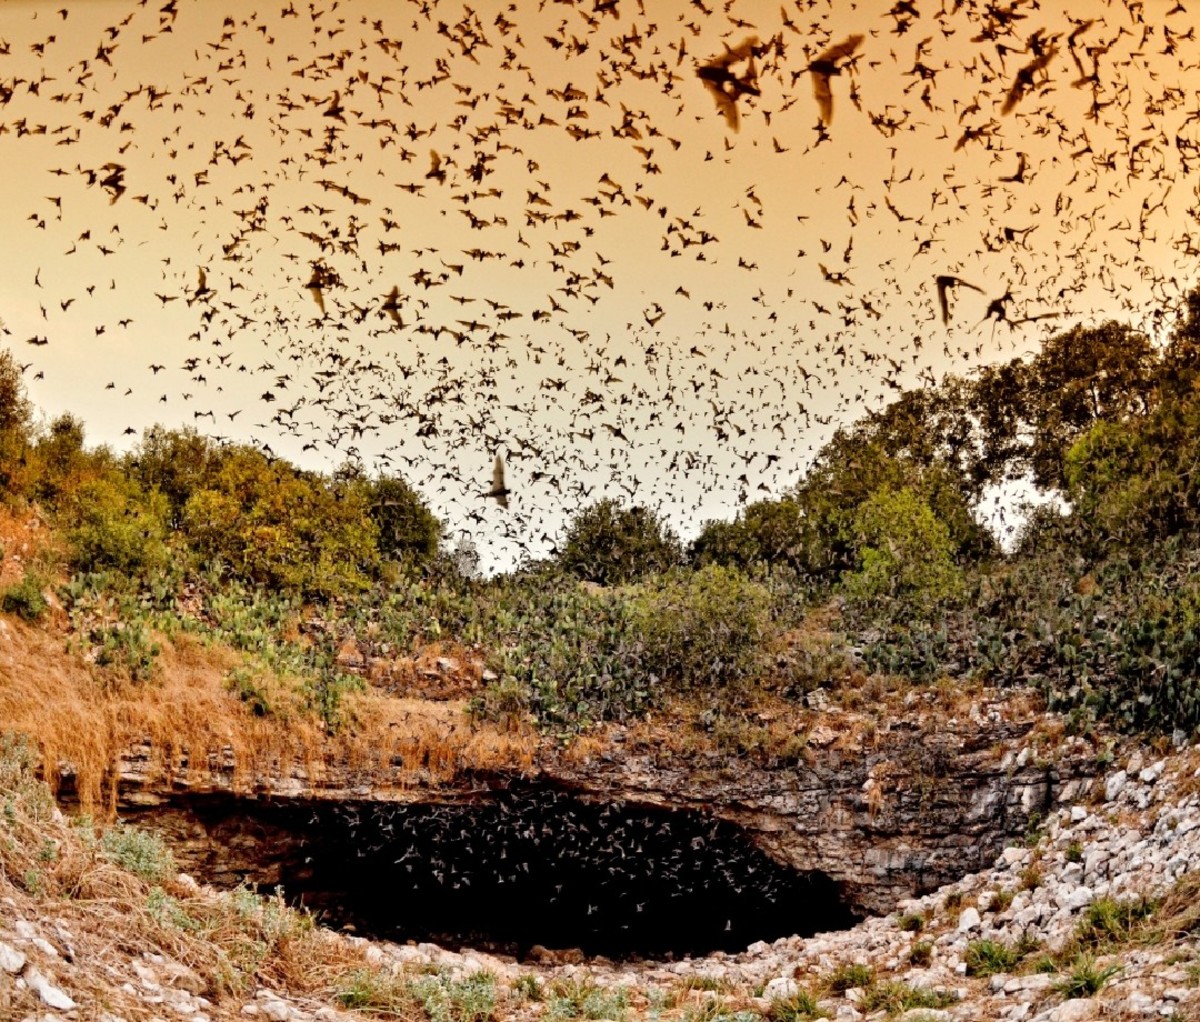 Много-много летучих мышей летают вокруг входа в пещеру вулканов в Техасе.